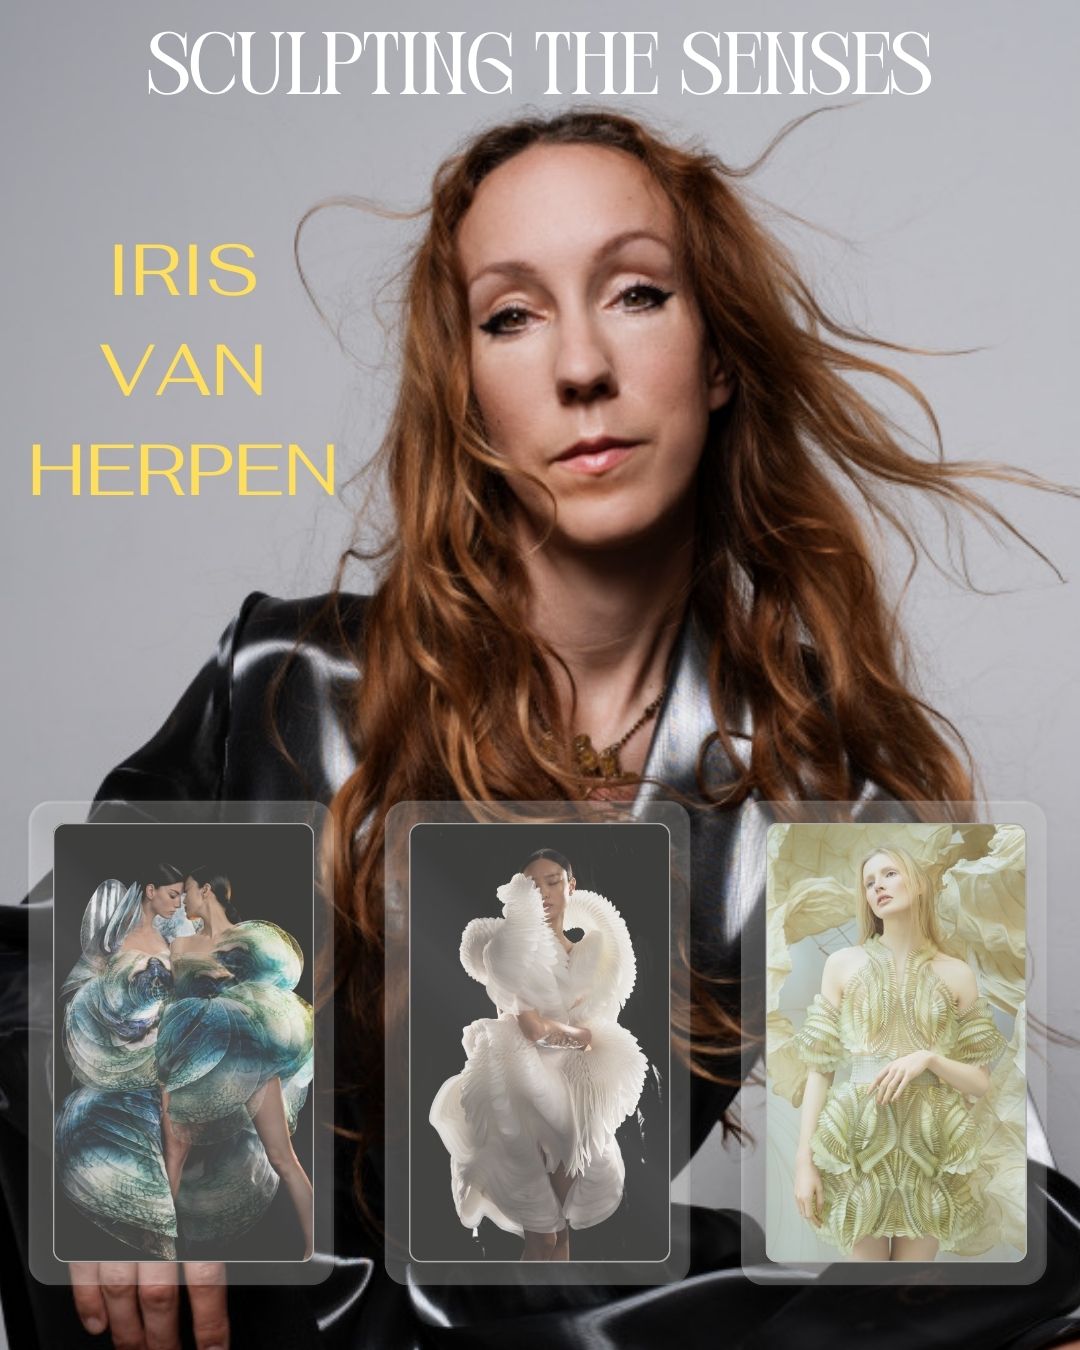 Descubre la esencia creativa de Iris van Herpen en "Sculpting the Senses"